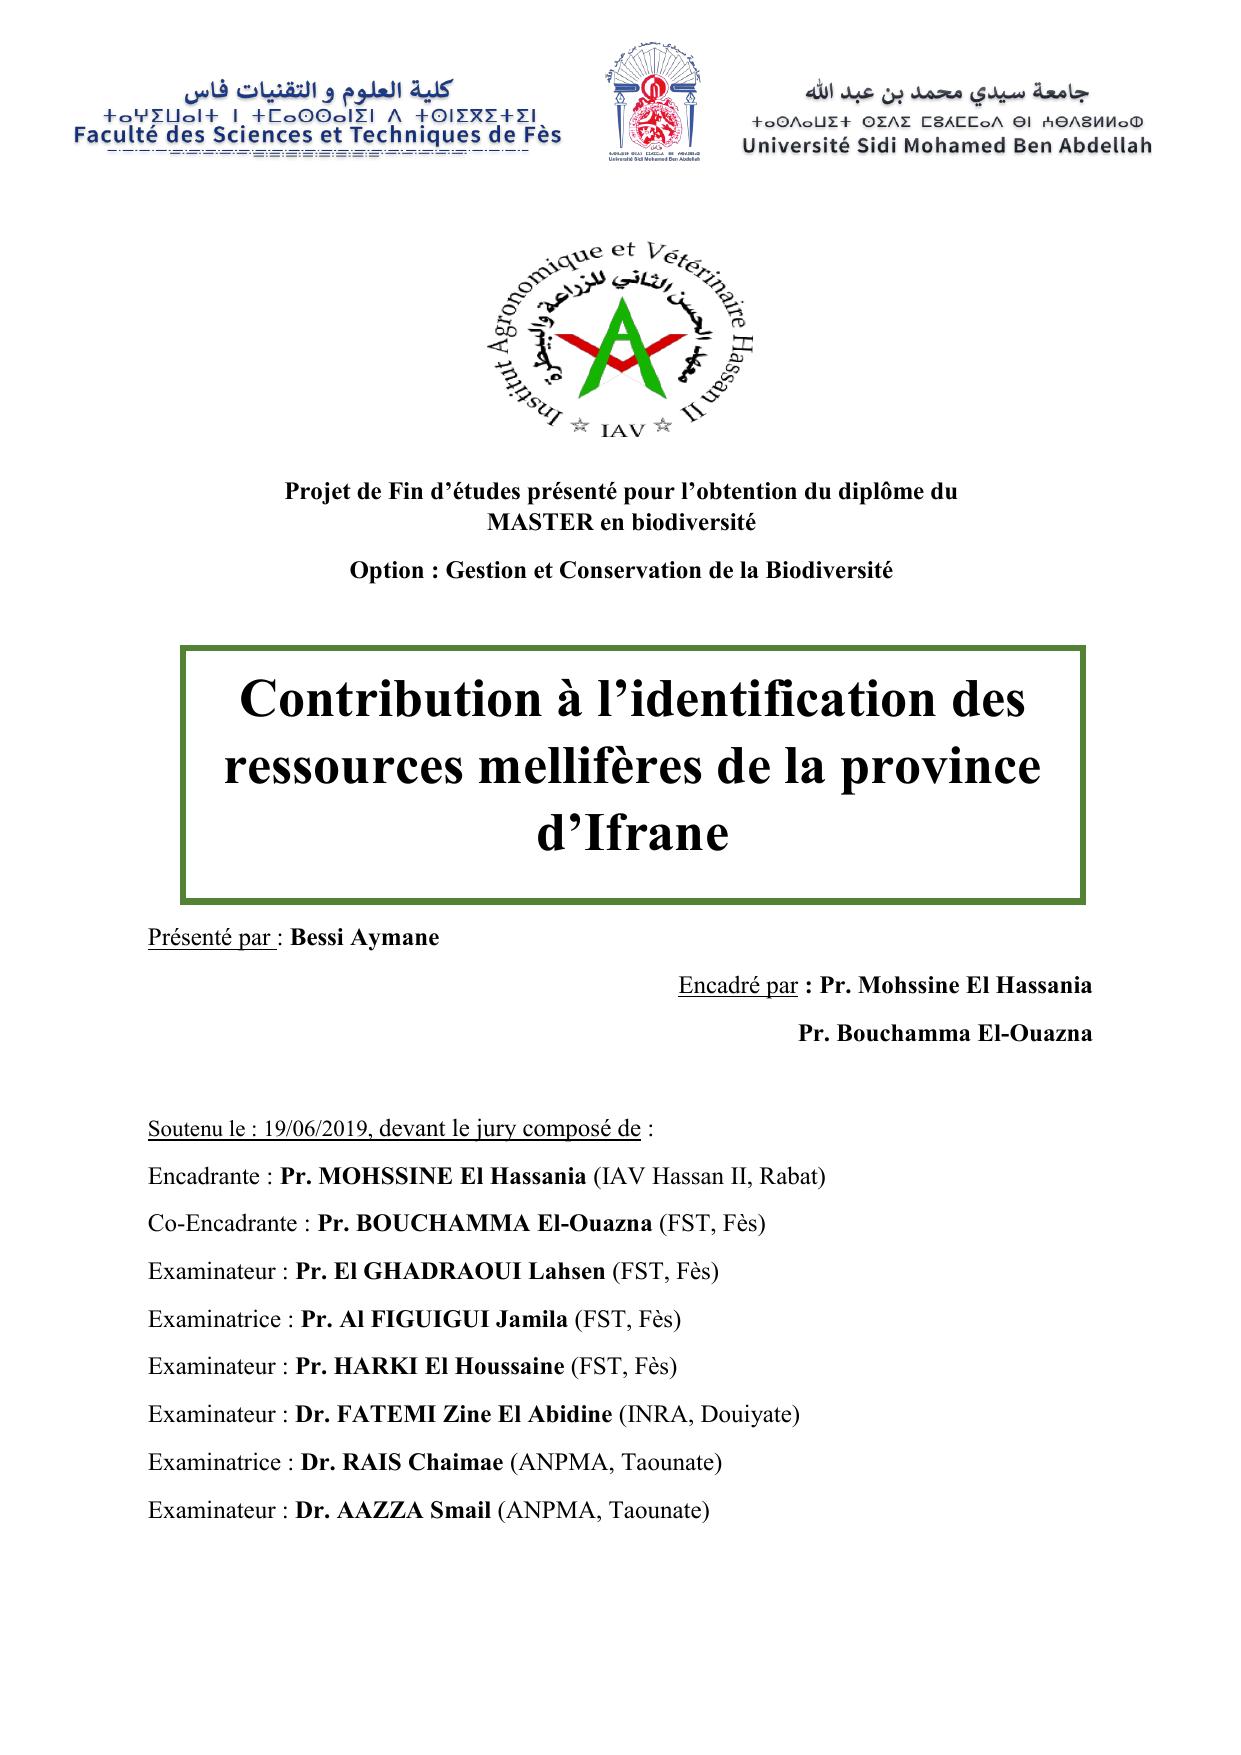 Contribution à l’identification des ressources mellifères de la province d’Ifrane